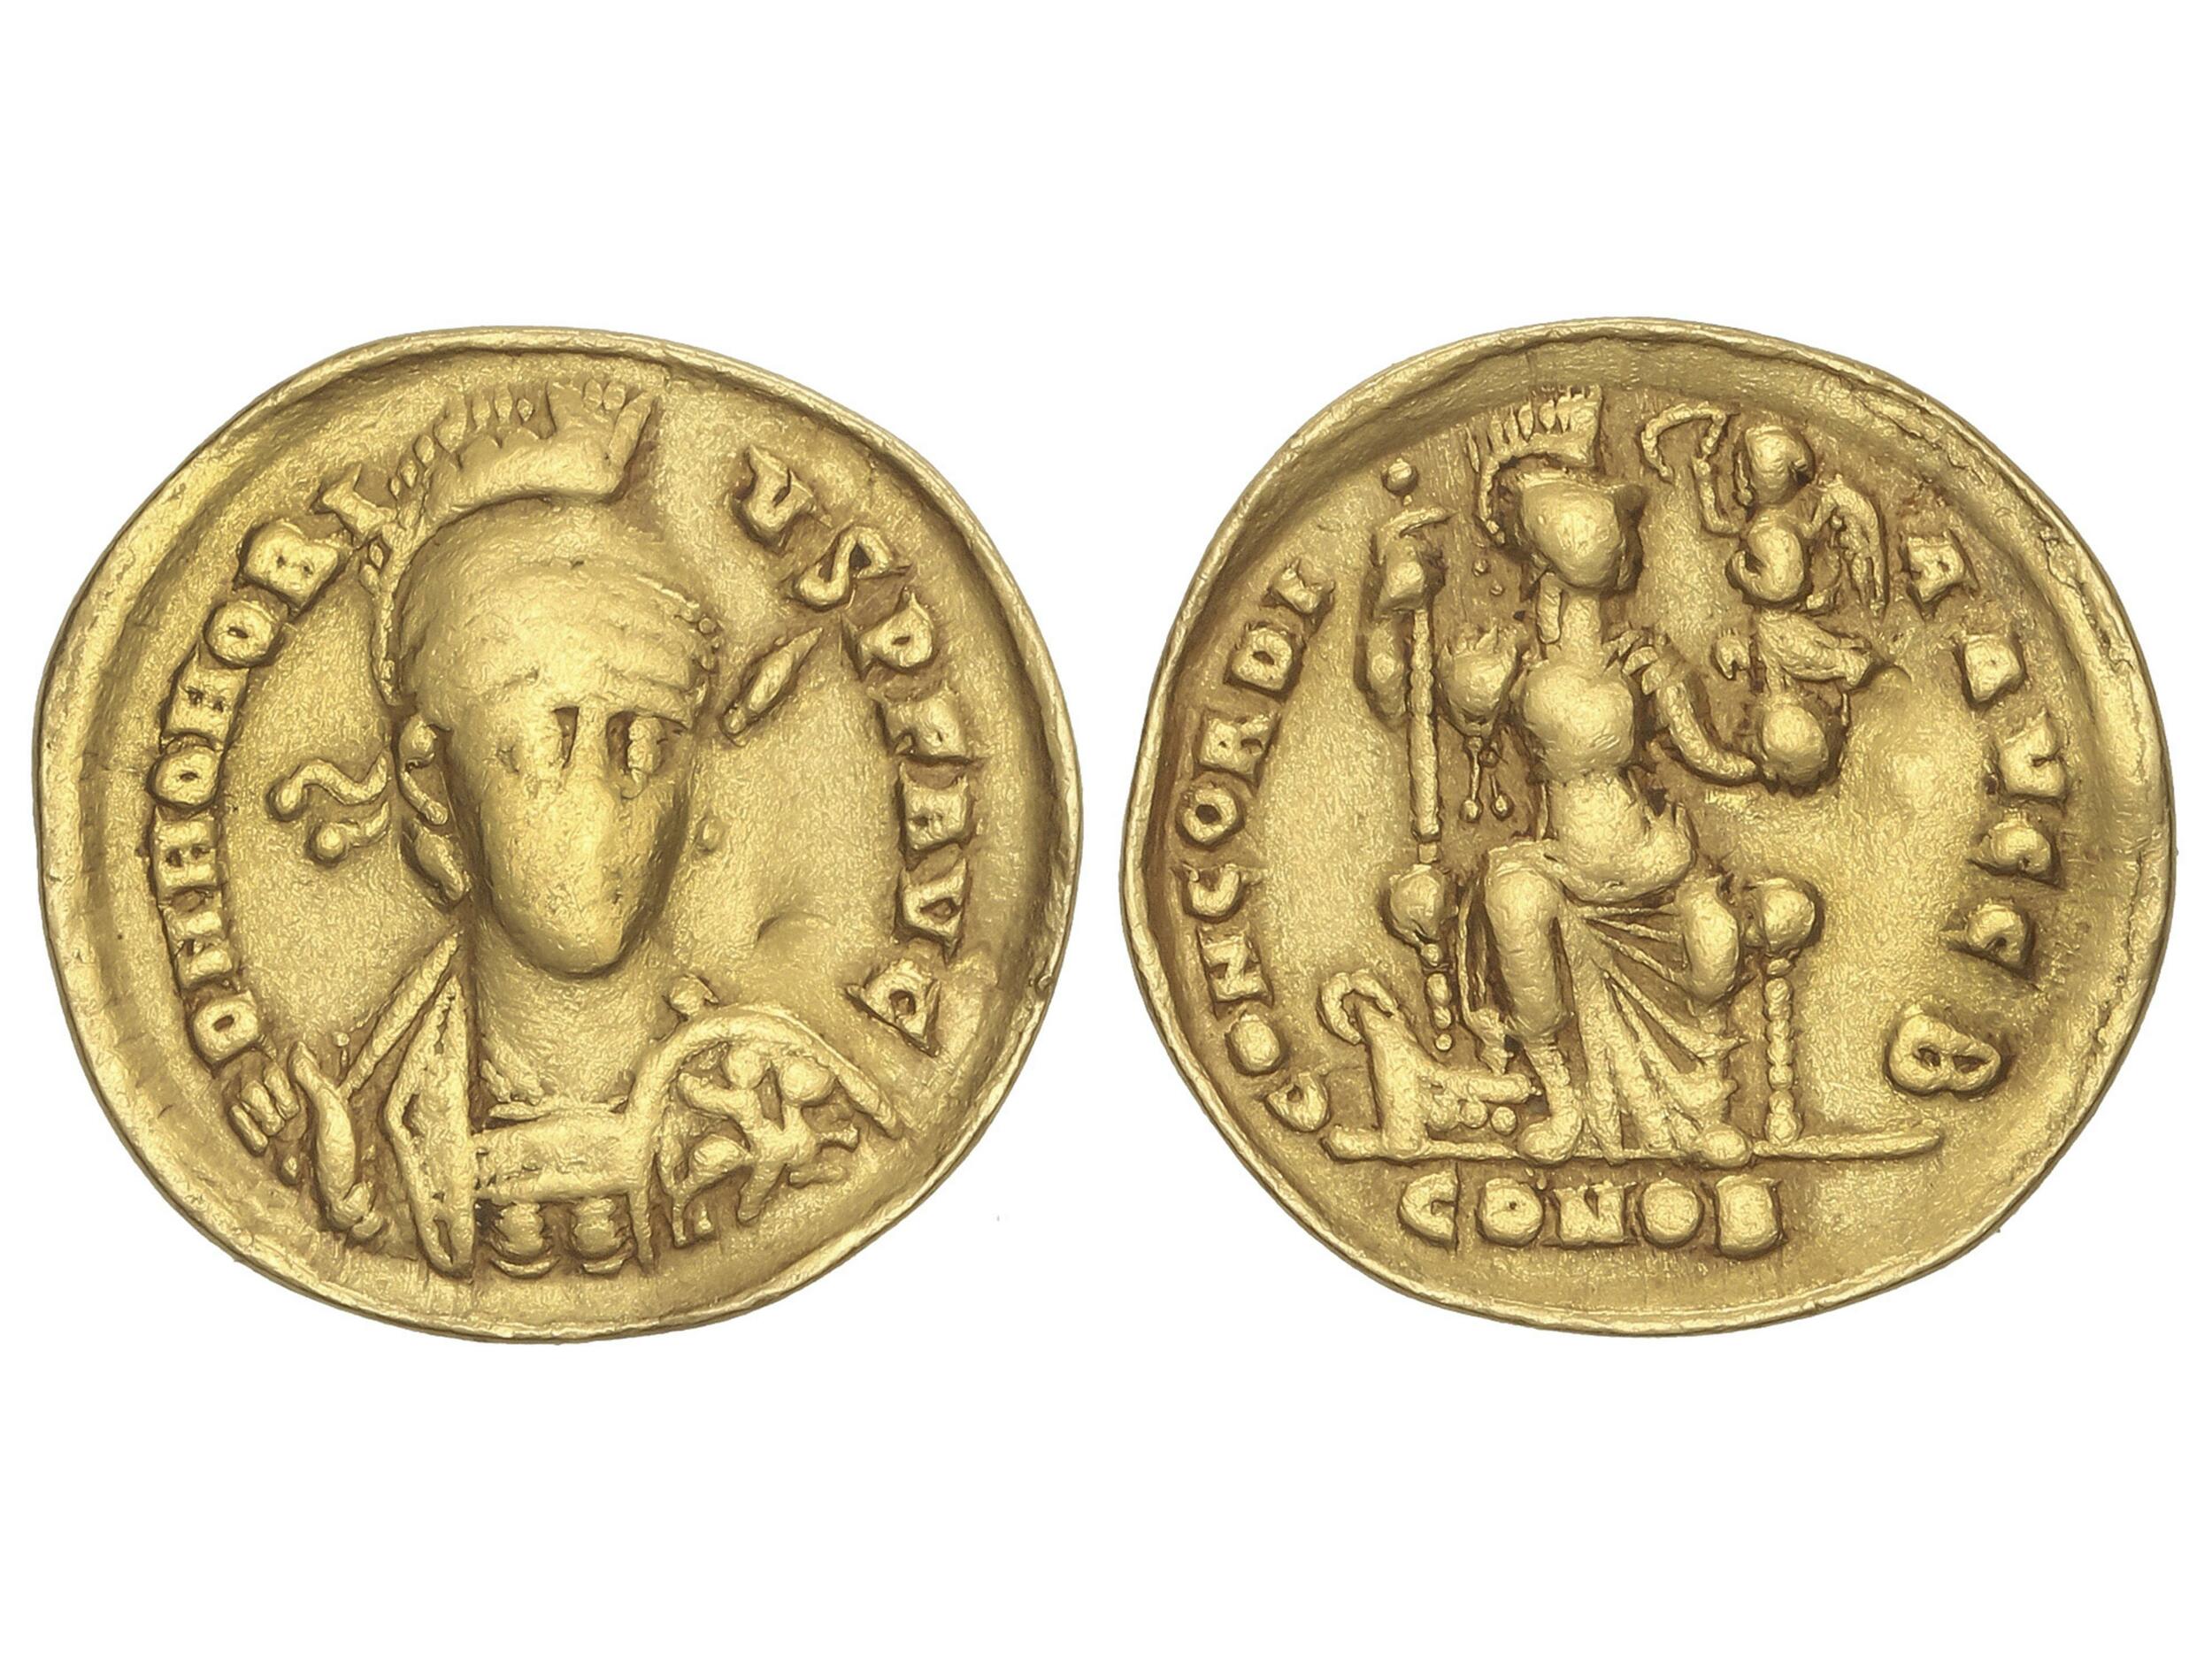 10.50.10: L’antiquité - re-divisé Empire - Honorius, 393-423